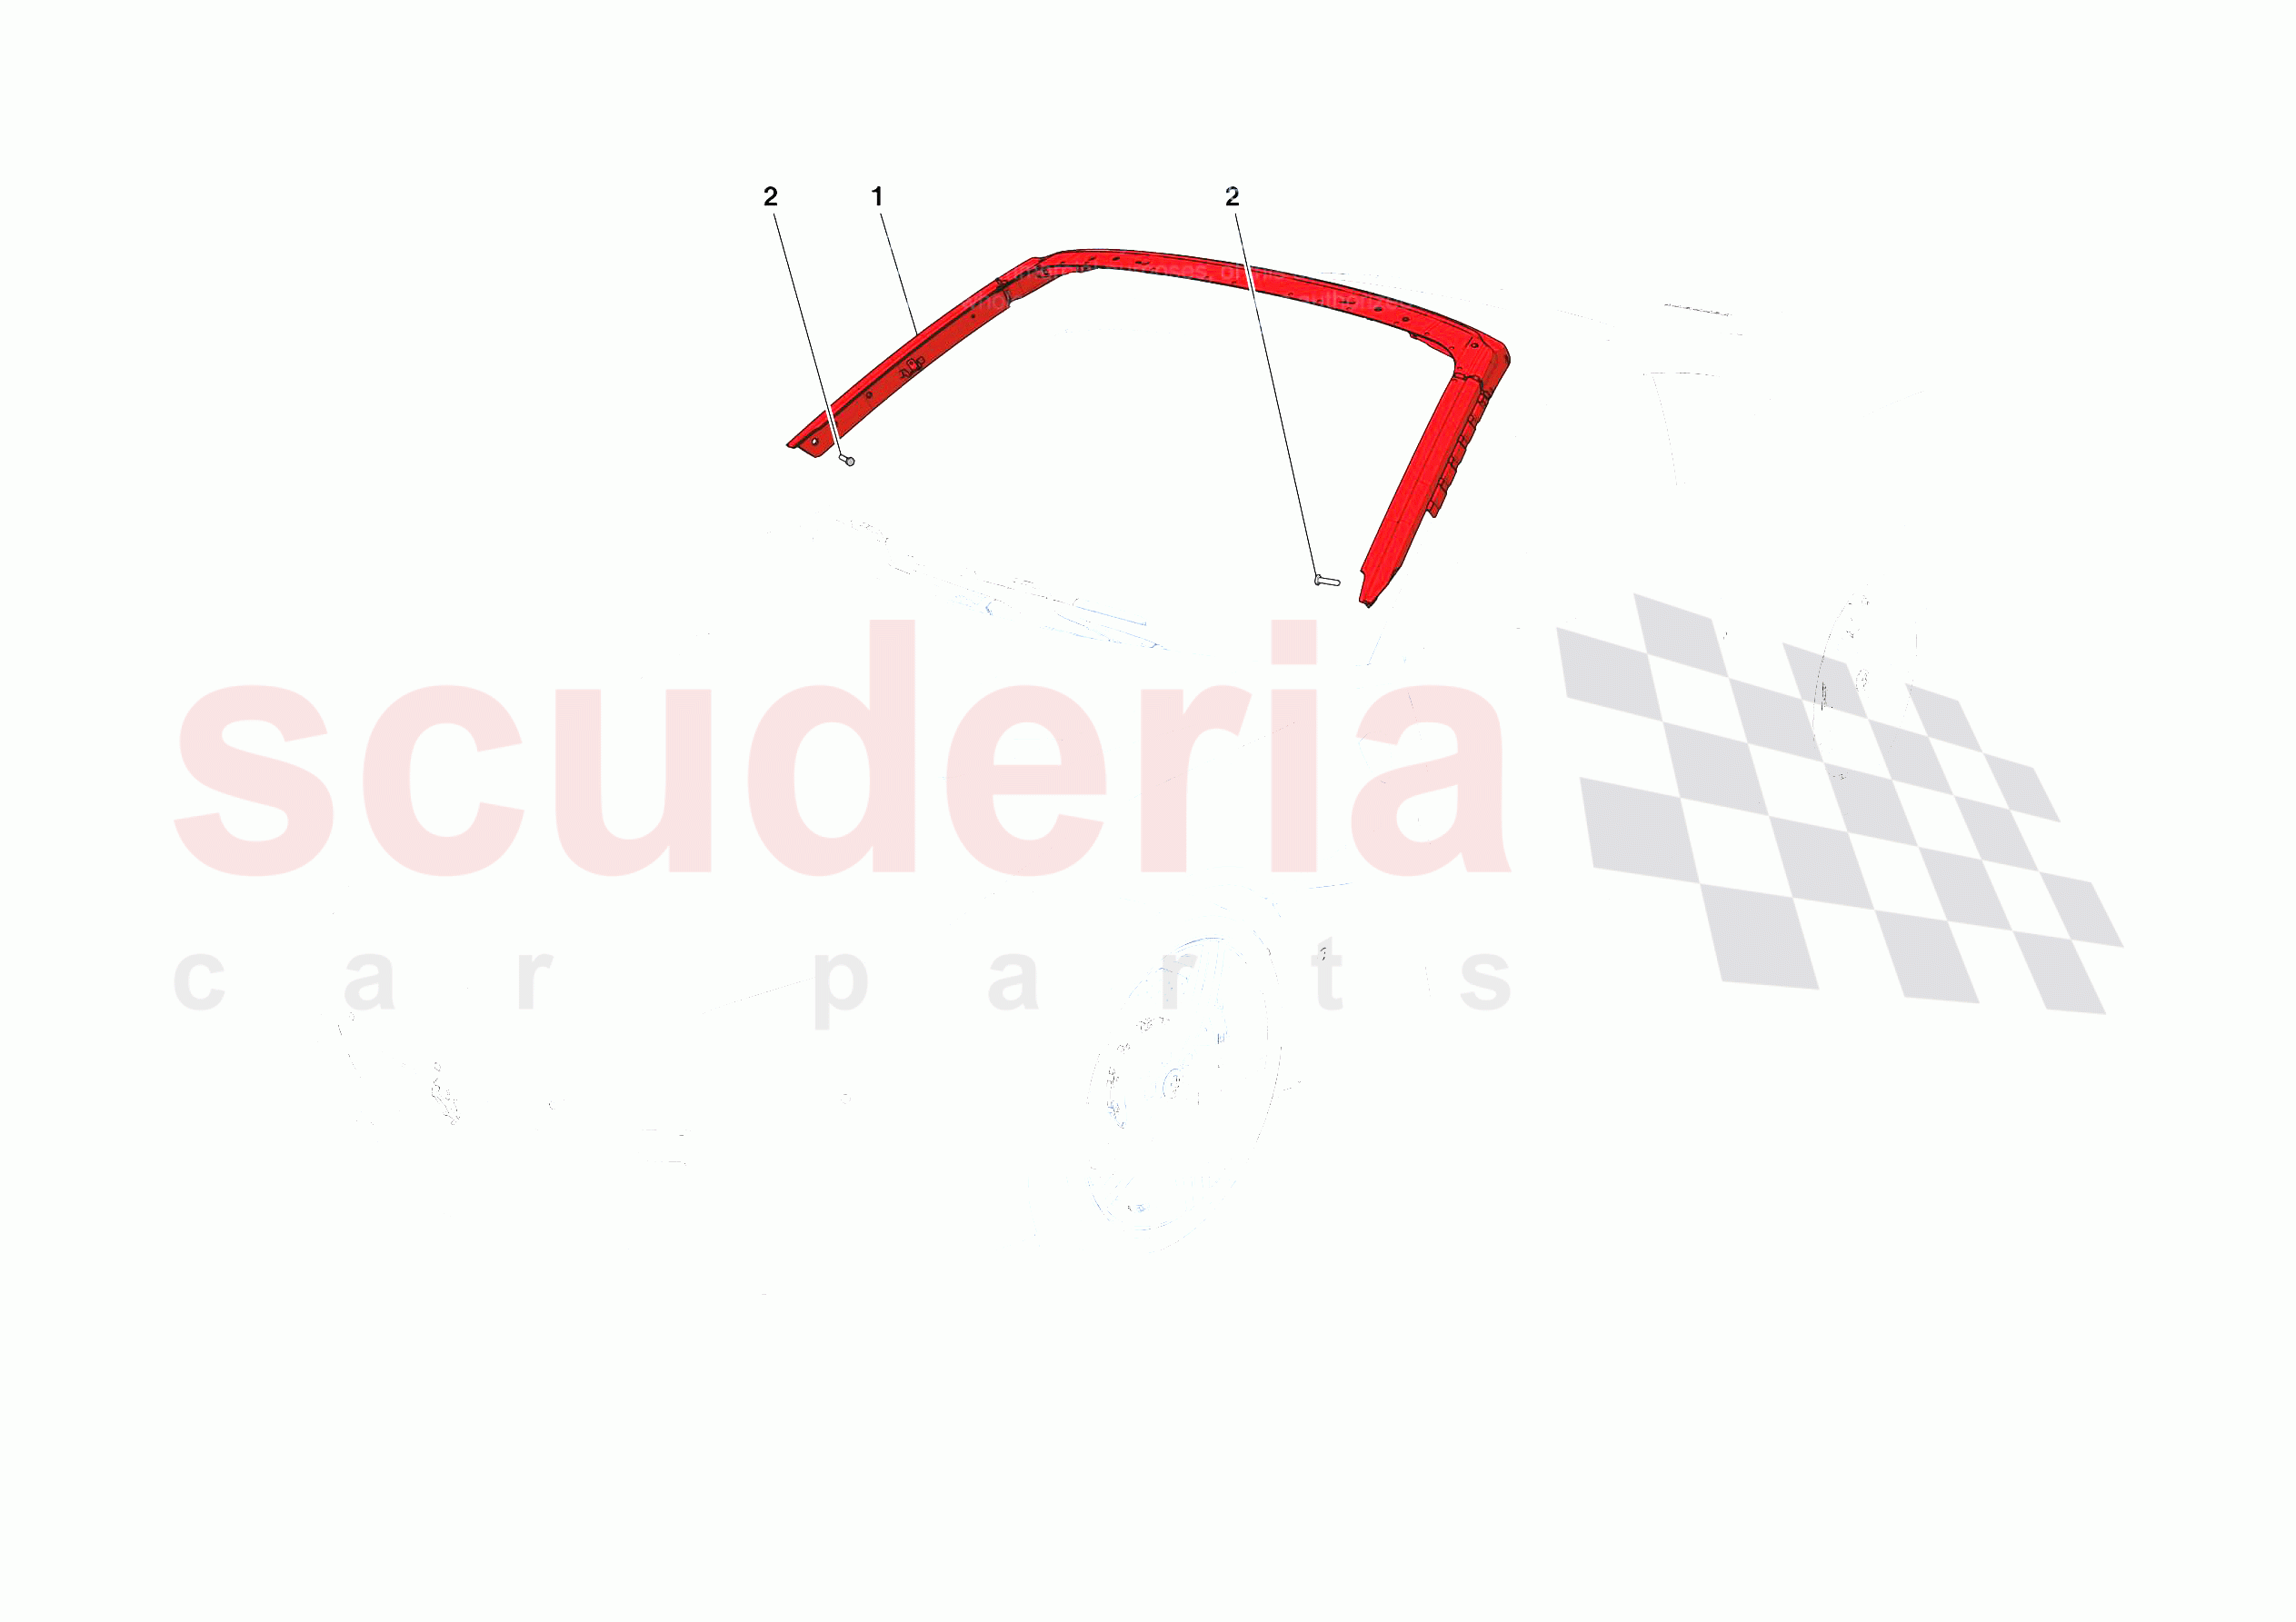 HEADLINER of Ferrari Ferrari Portofino Europe